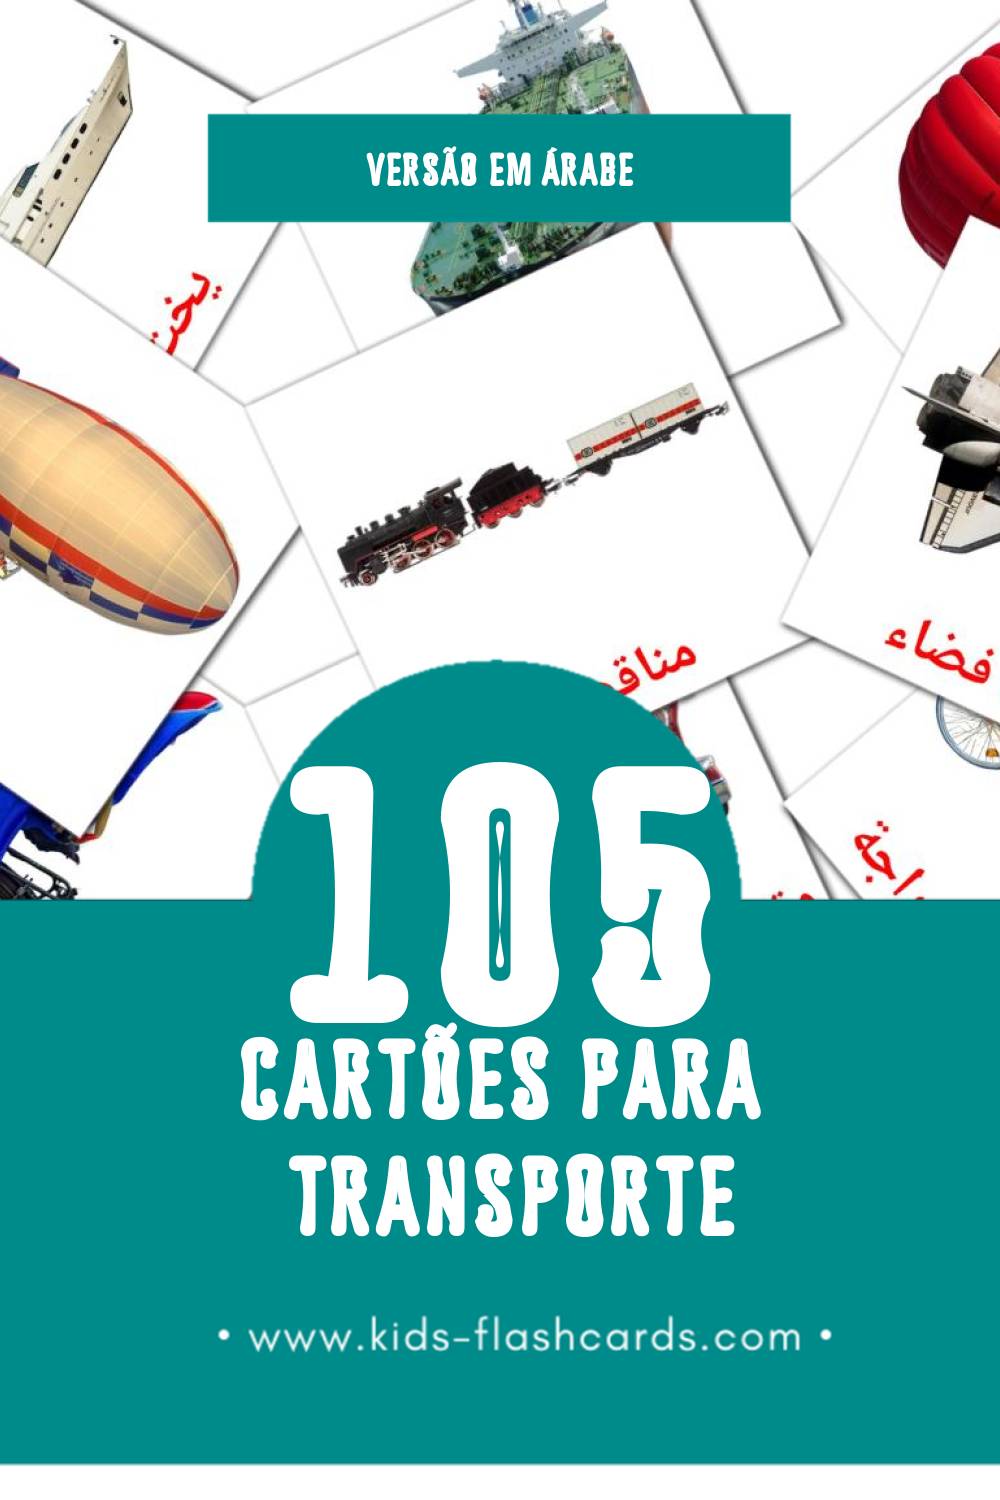 Flashcards de وسائل النقل Visuais para Toddlers (105 cartões em Árabe)